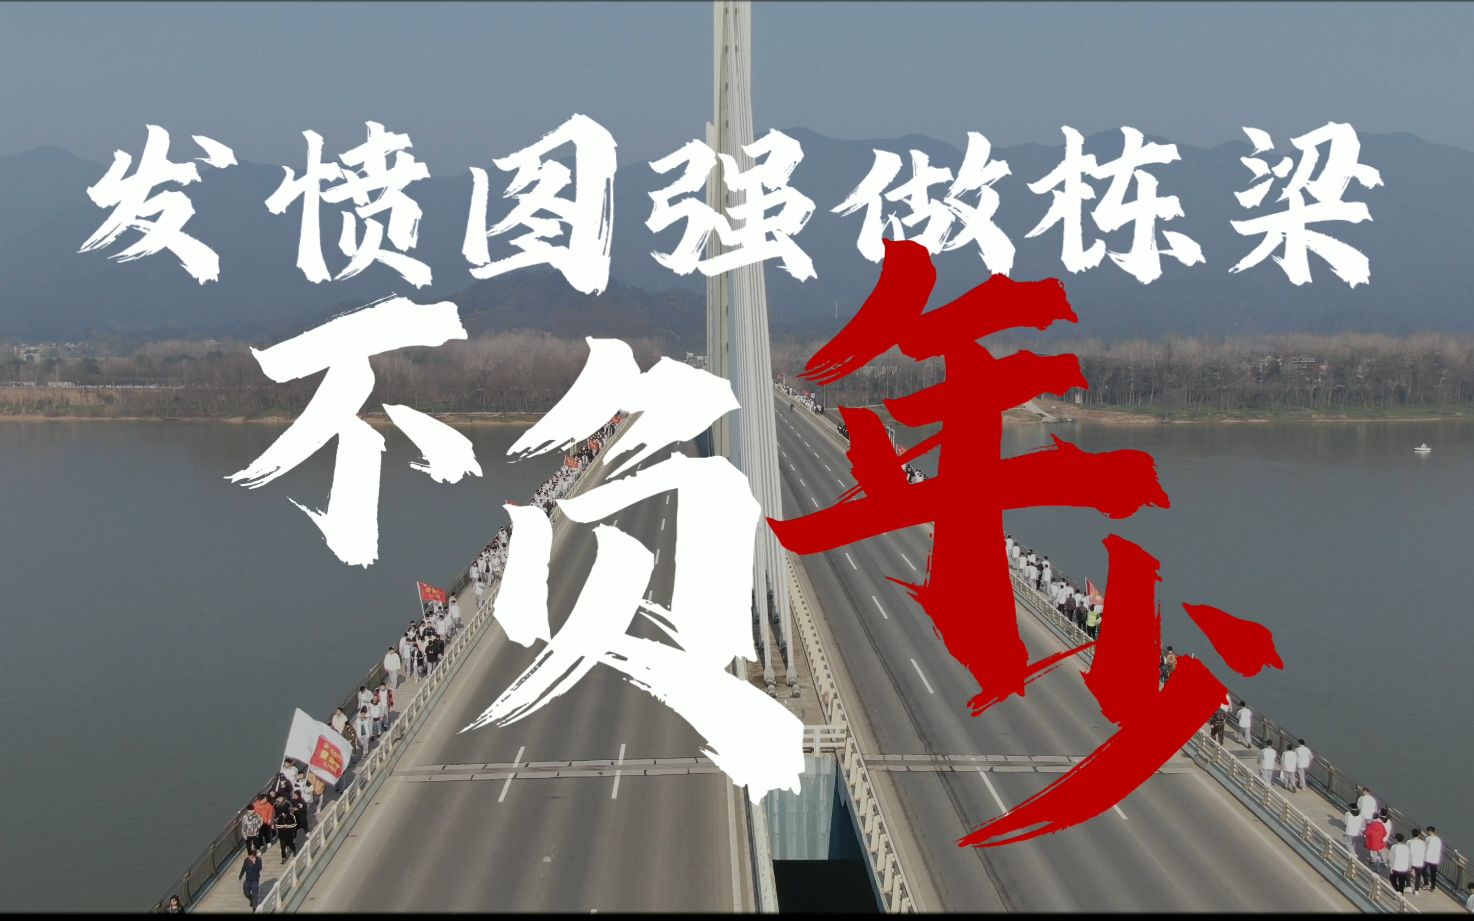 杭州技师学院版少年中国说发愤图强做栋梁不负年少献礼中国共产主义